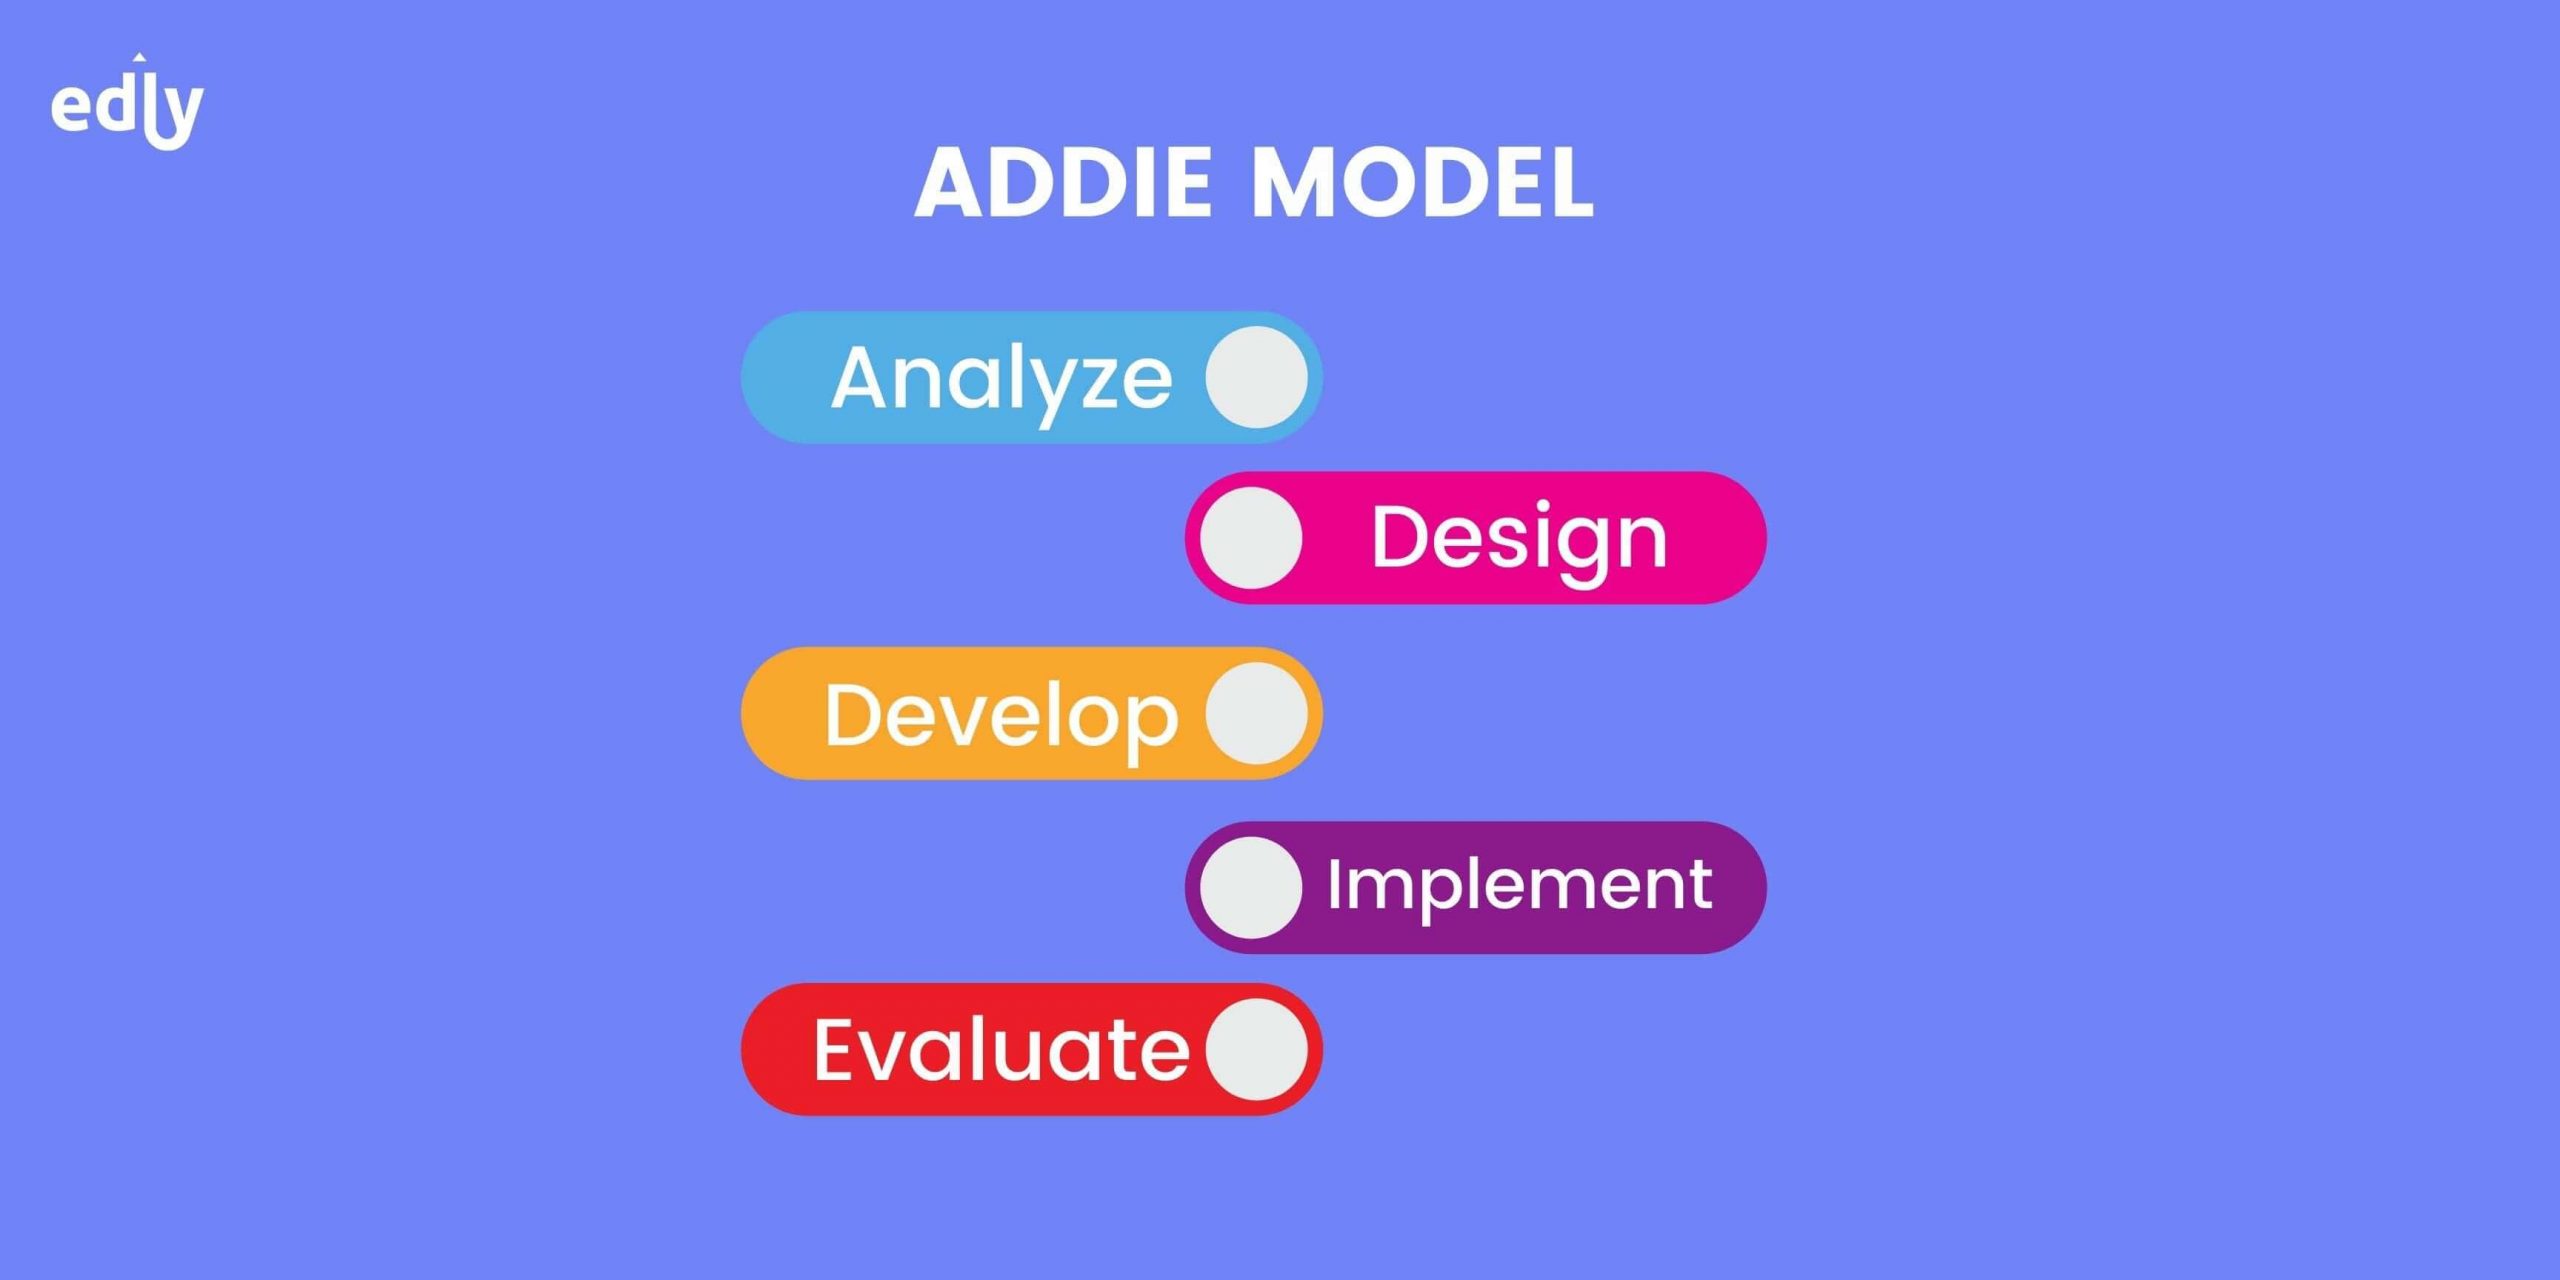 Addie Model